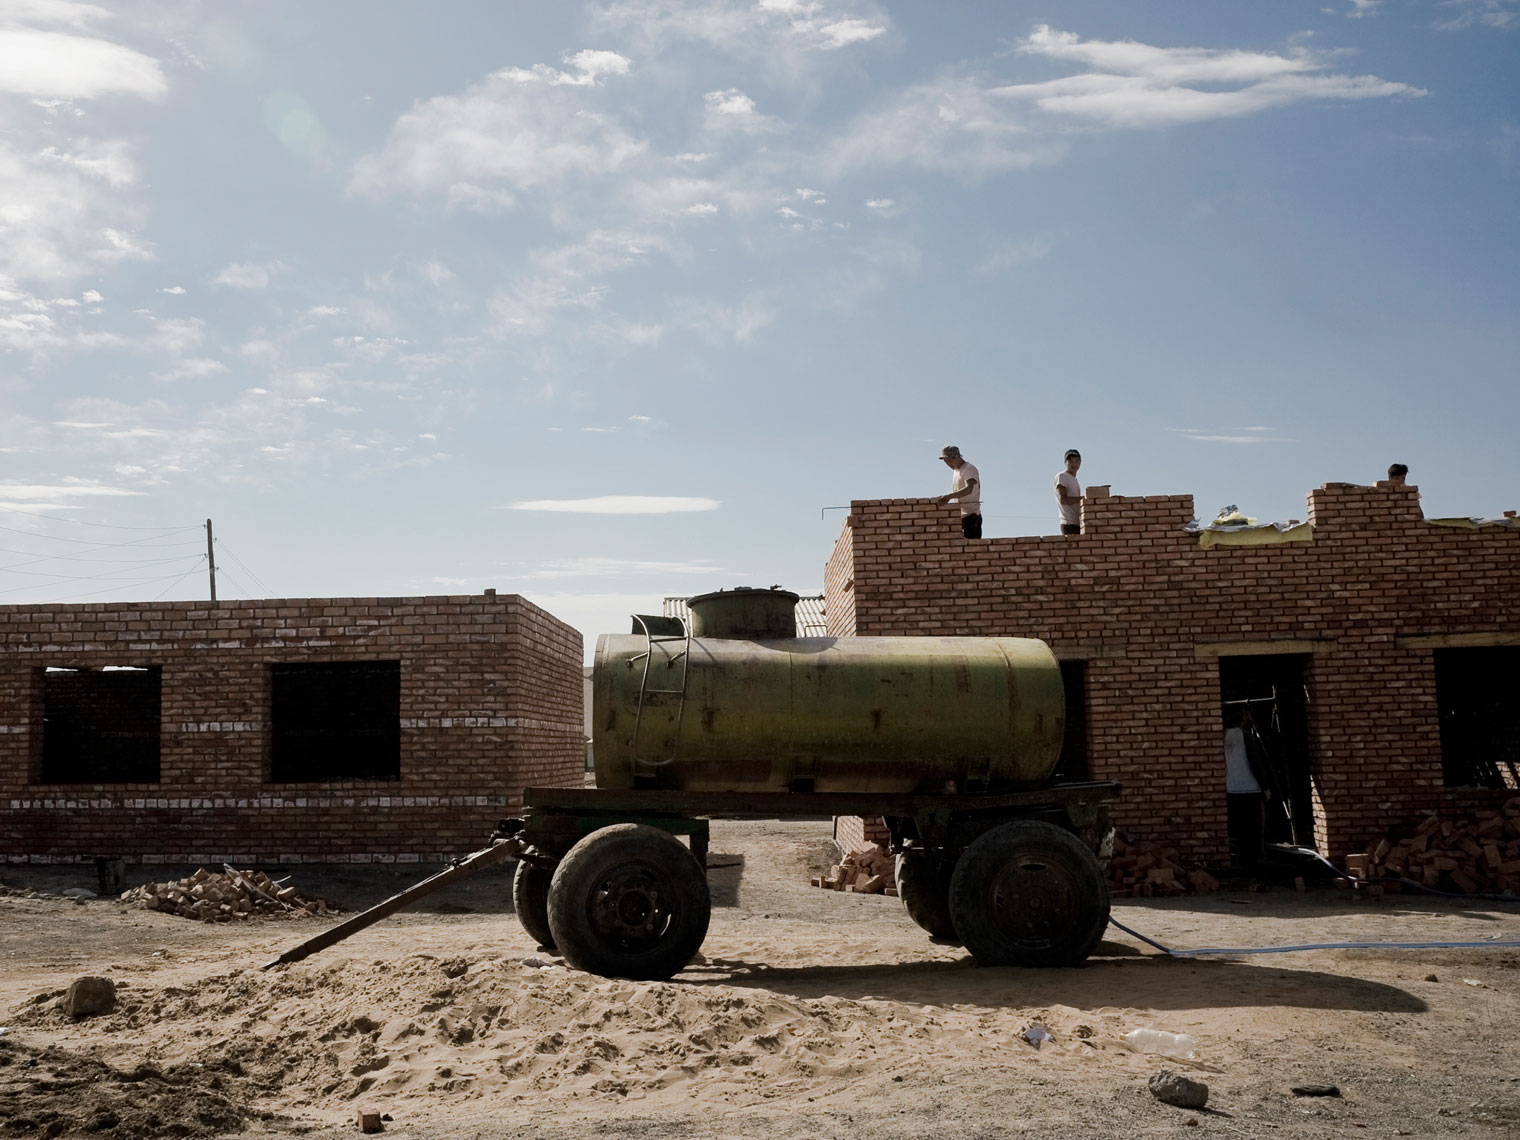 MONGOLIA.  Gobi desert, 2012. Construction works in a village.